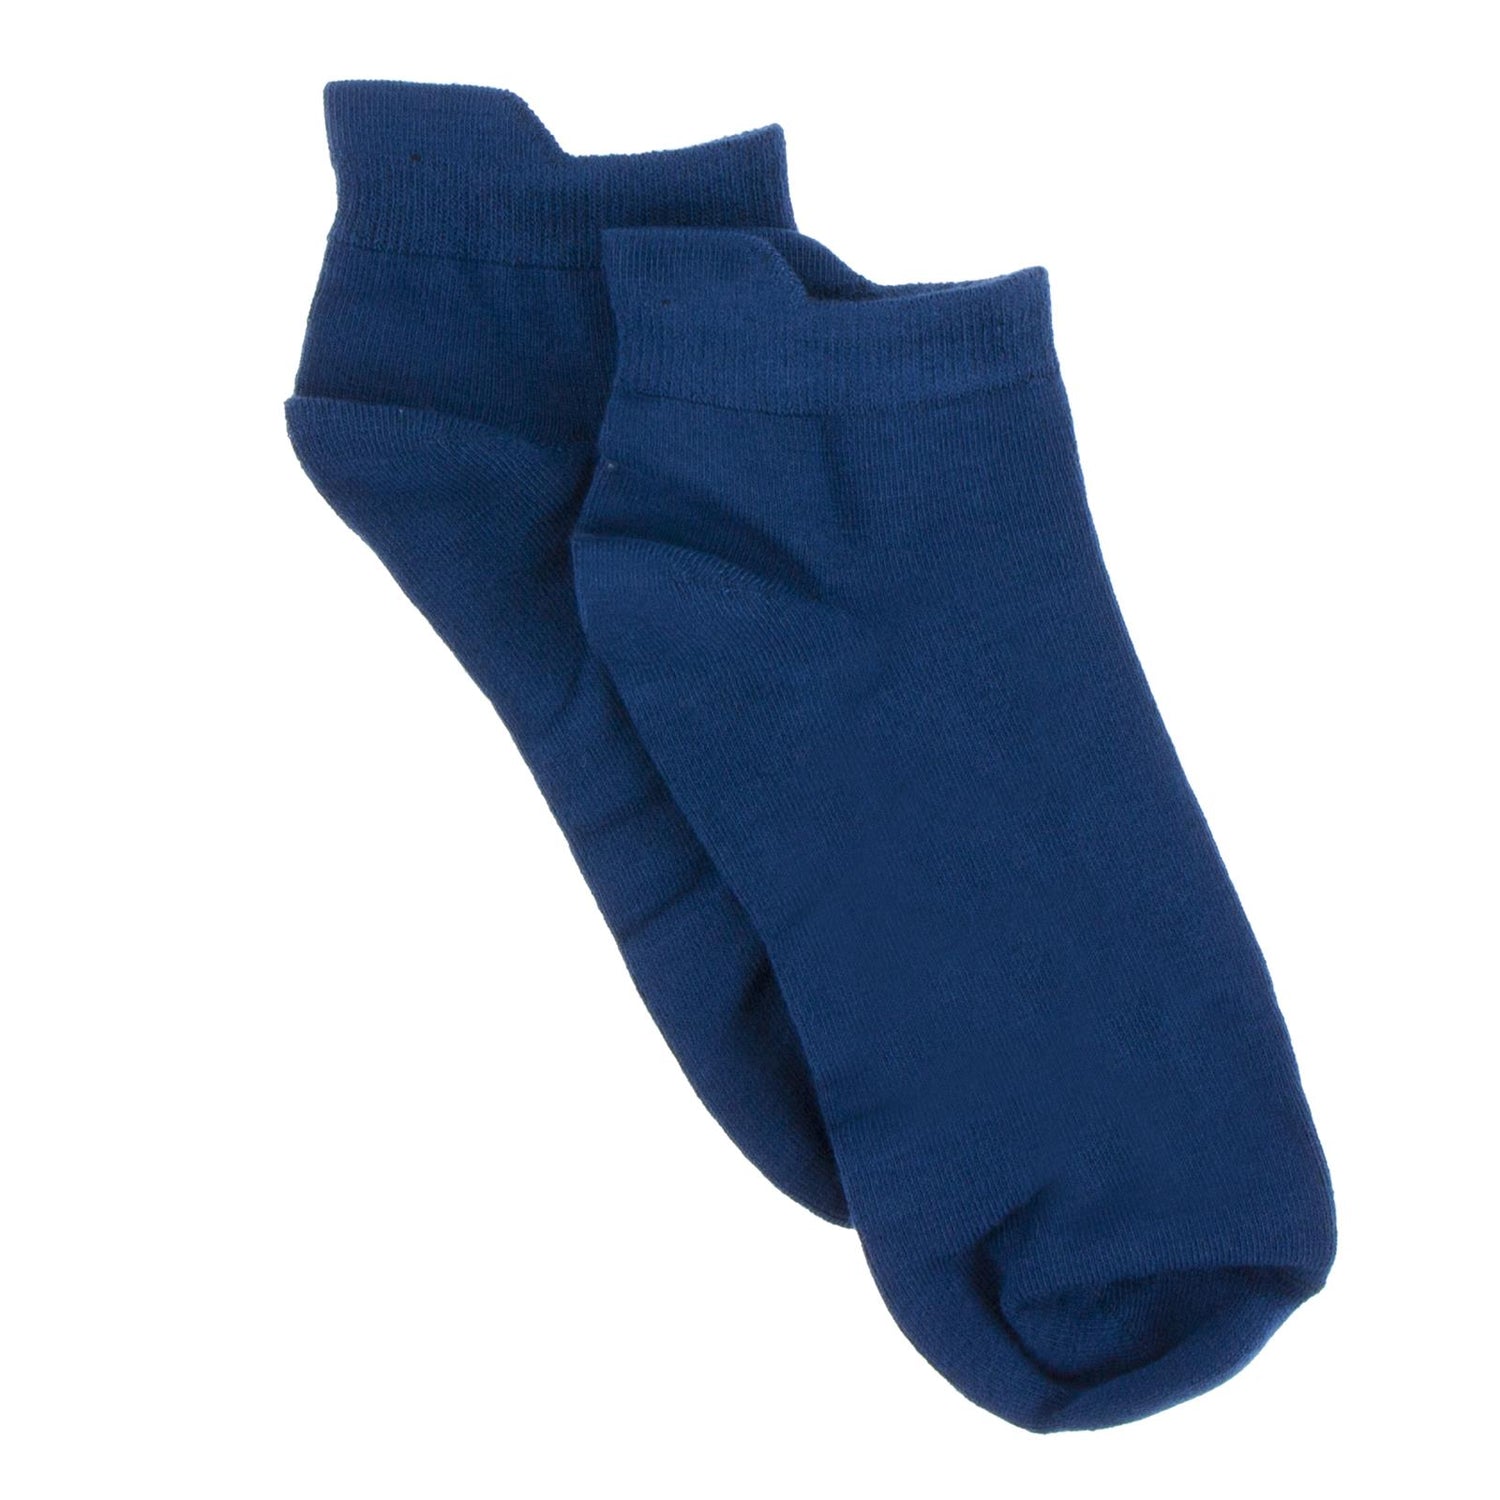 Men's Low Socks in Navy